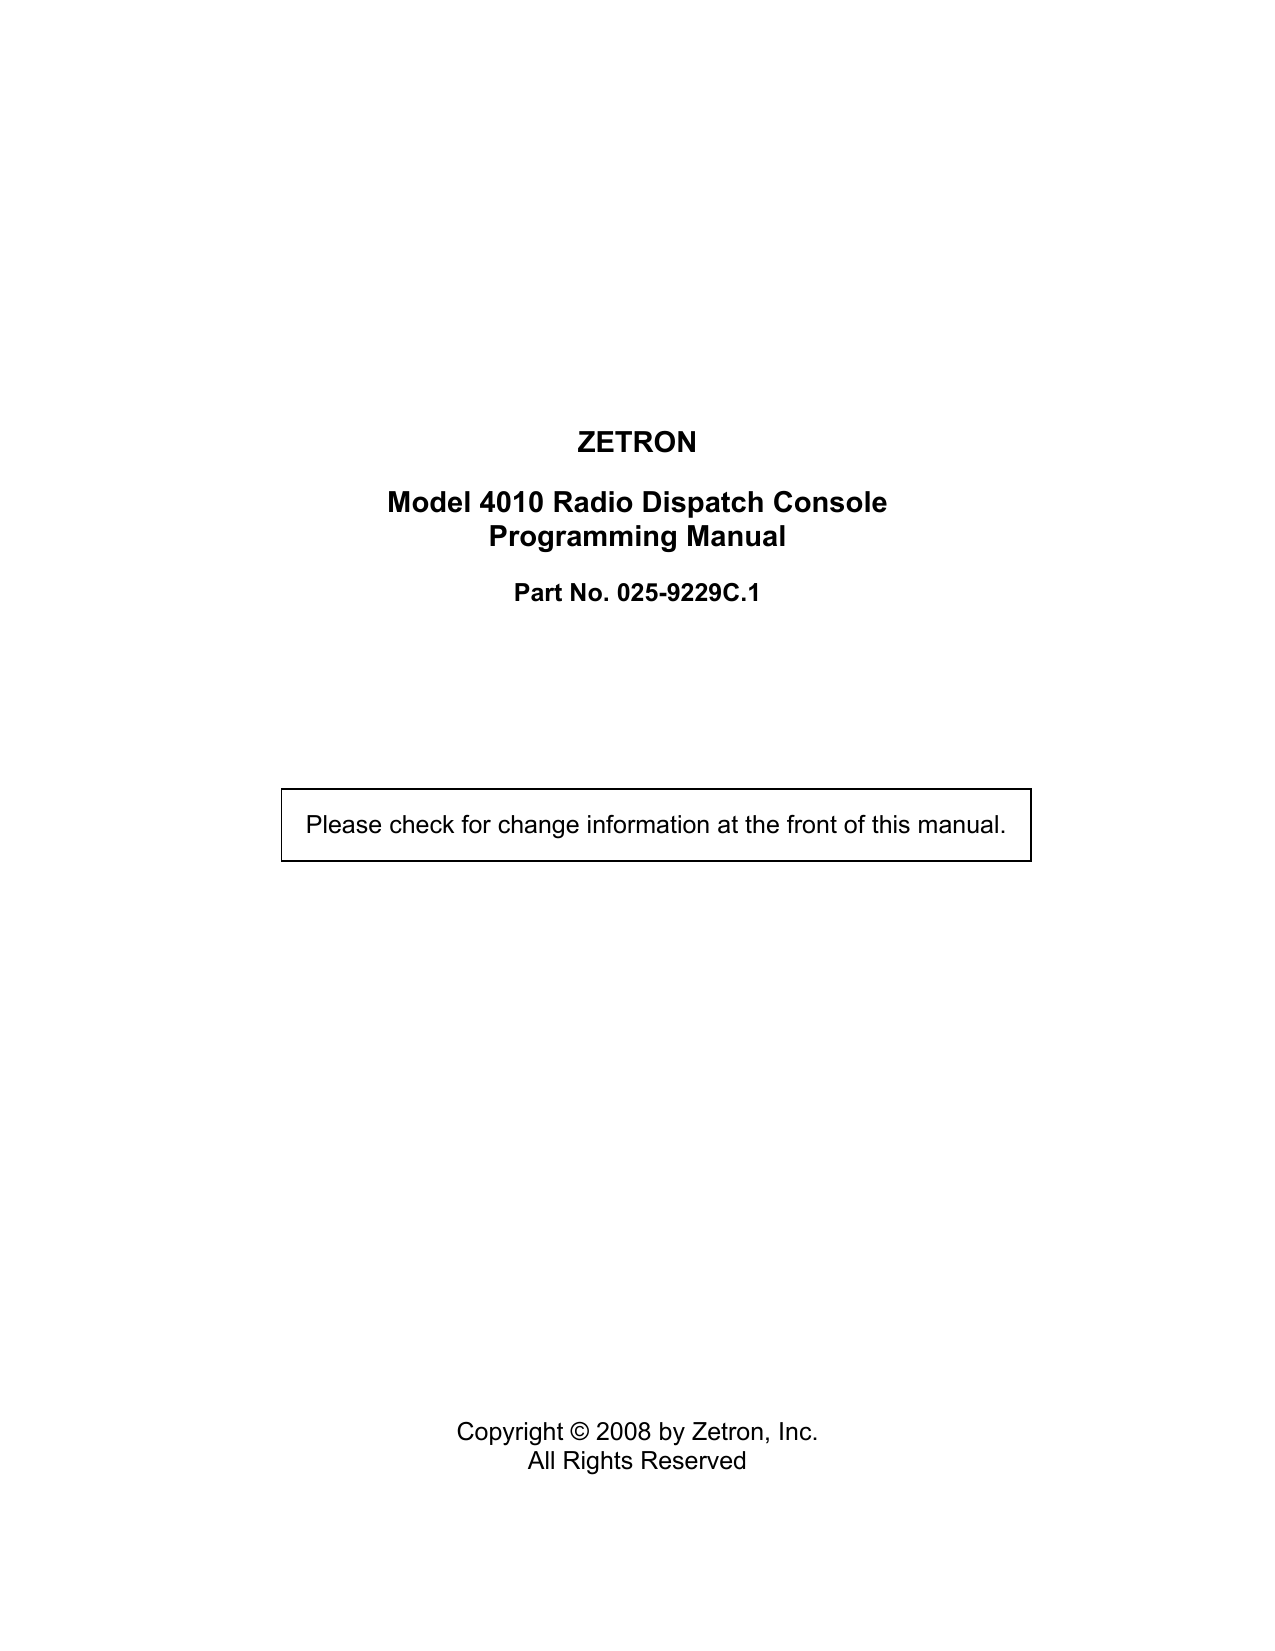 Zetron 4010 programming manual pdf